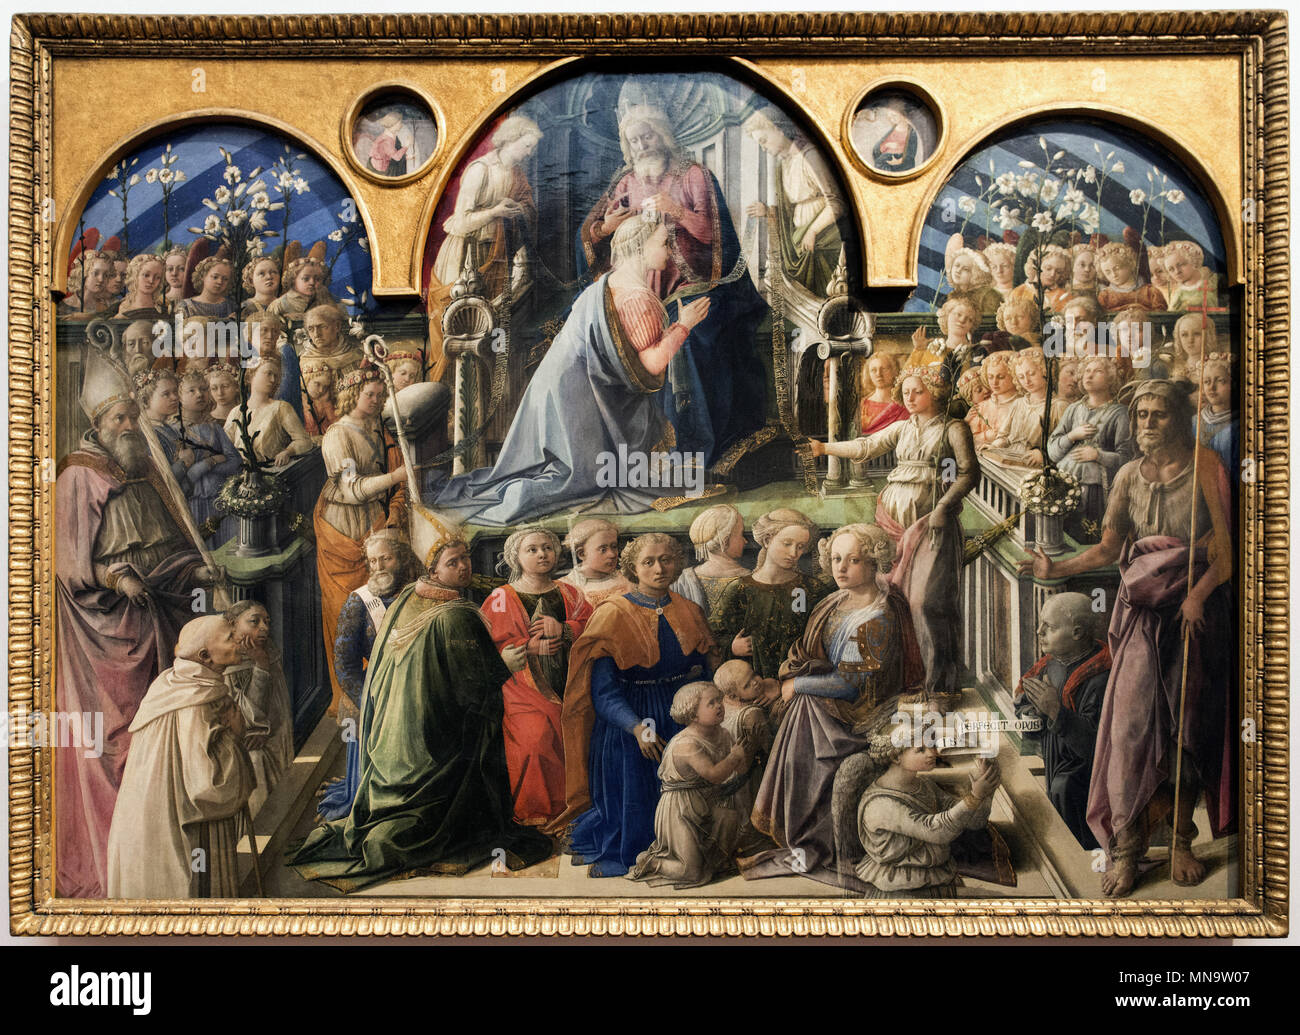 Filippo Lippi - Coronation of the Virgin - C. 1439 - Uffizi Gallery - Galleria degli Uffizi Stock Photo